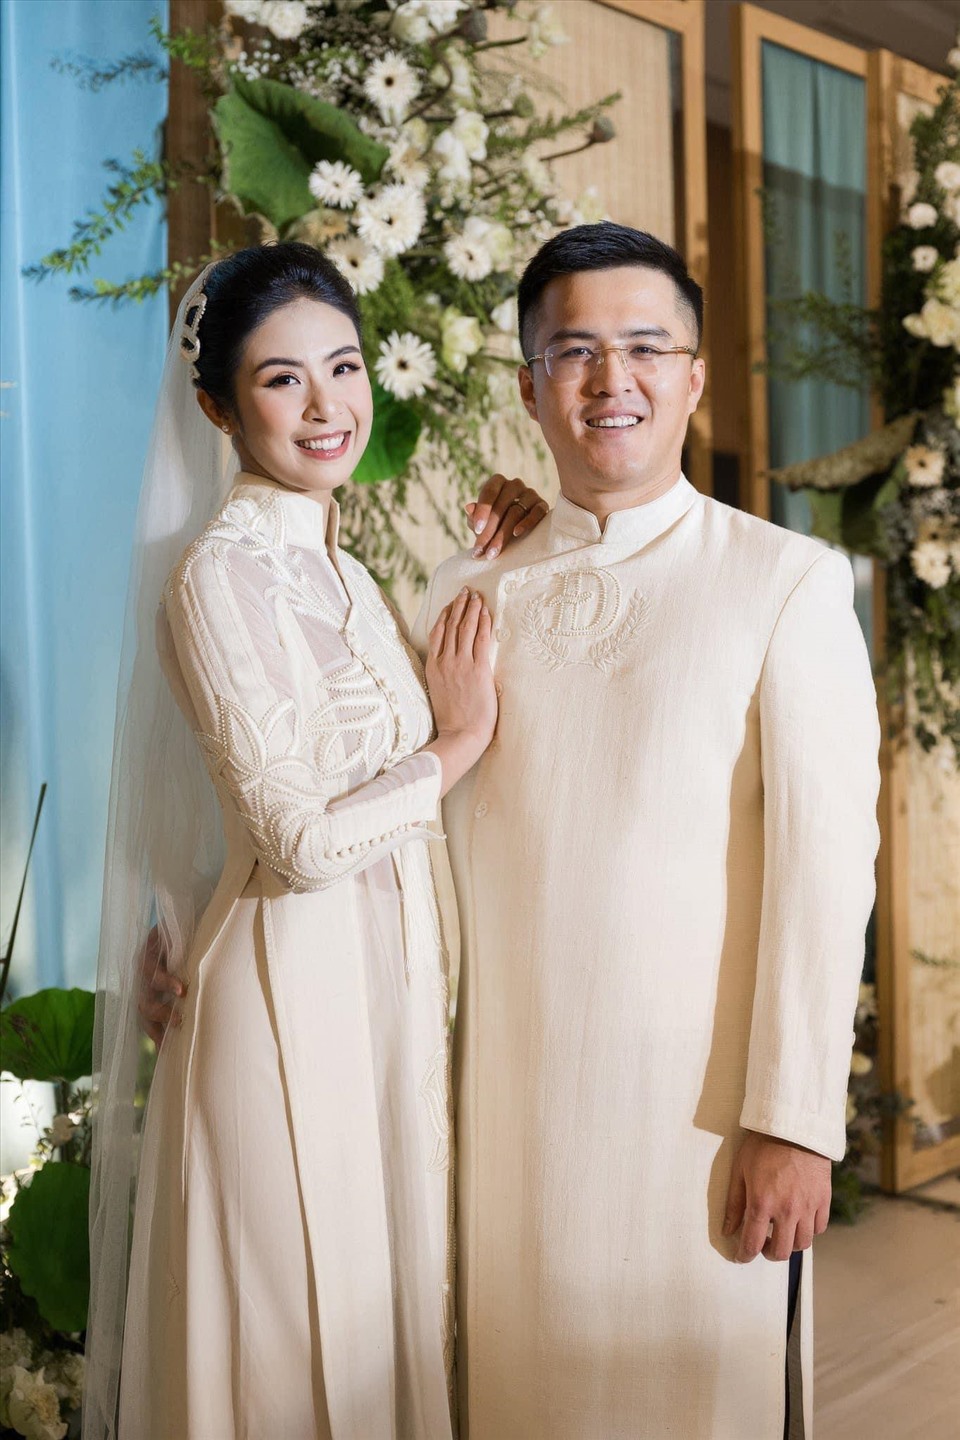 Hoa hậu Ngọc Hân và bạn trai Phú Đạt trong đám cưới. Ảnh: Nhân vật cung cấp.